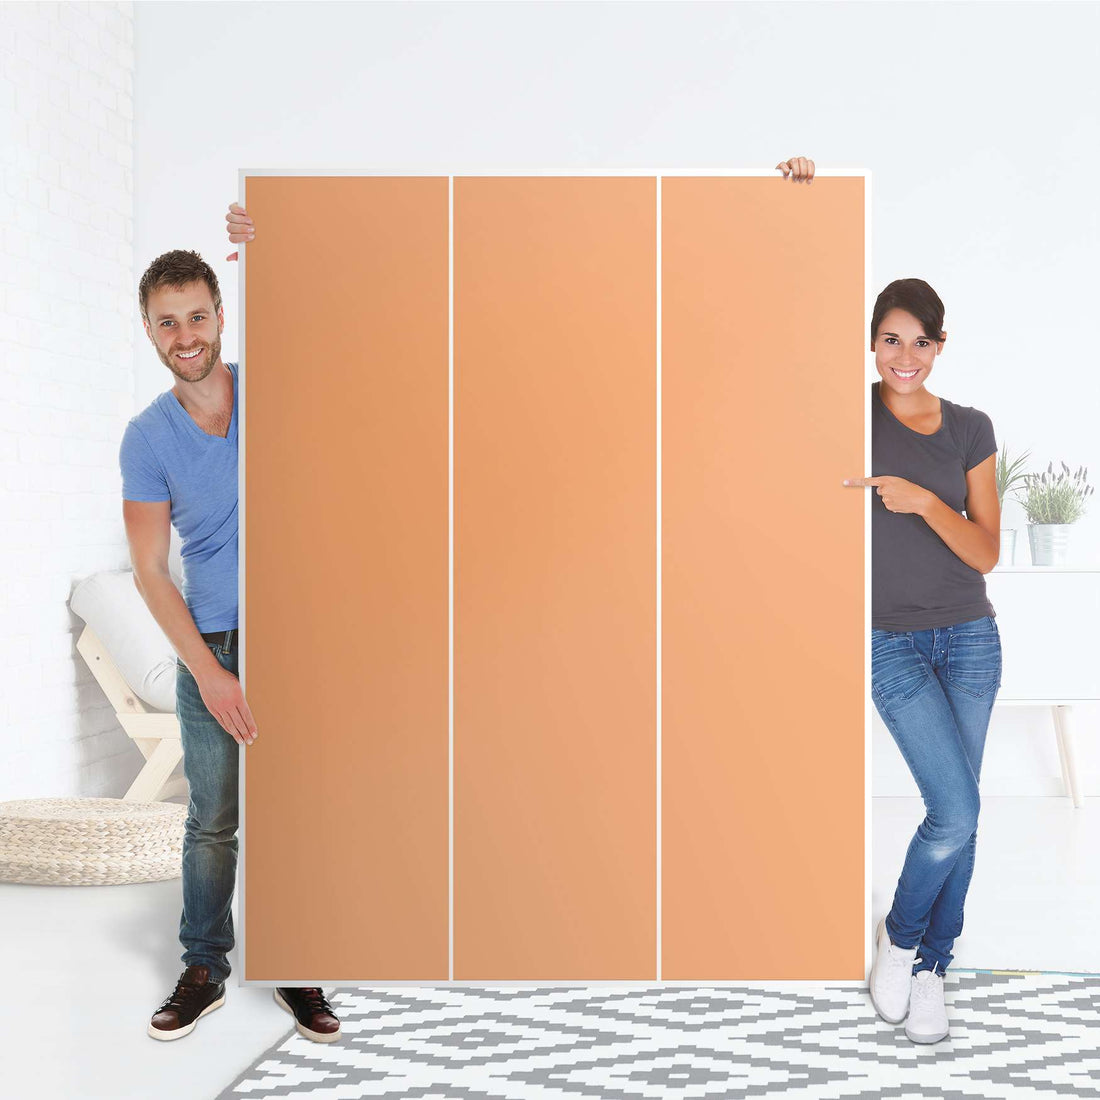 Folie für Möbel Orange Light - IKEA Pax Schrank 201 cm Höhe - 3 Türen - Folie